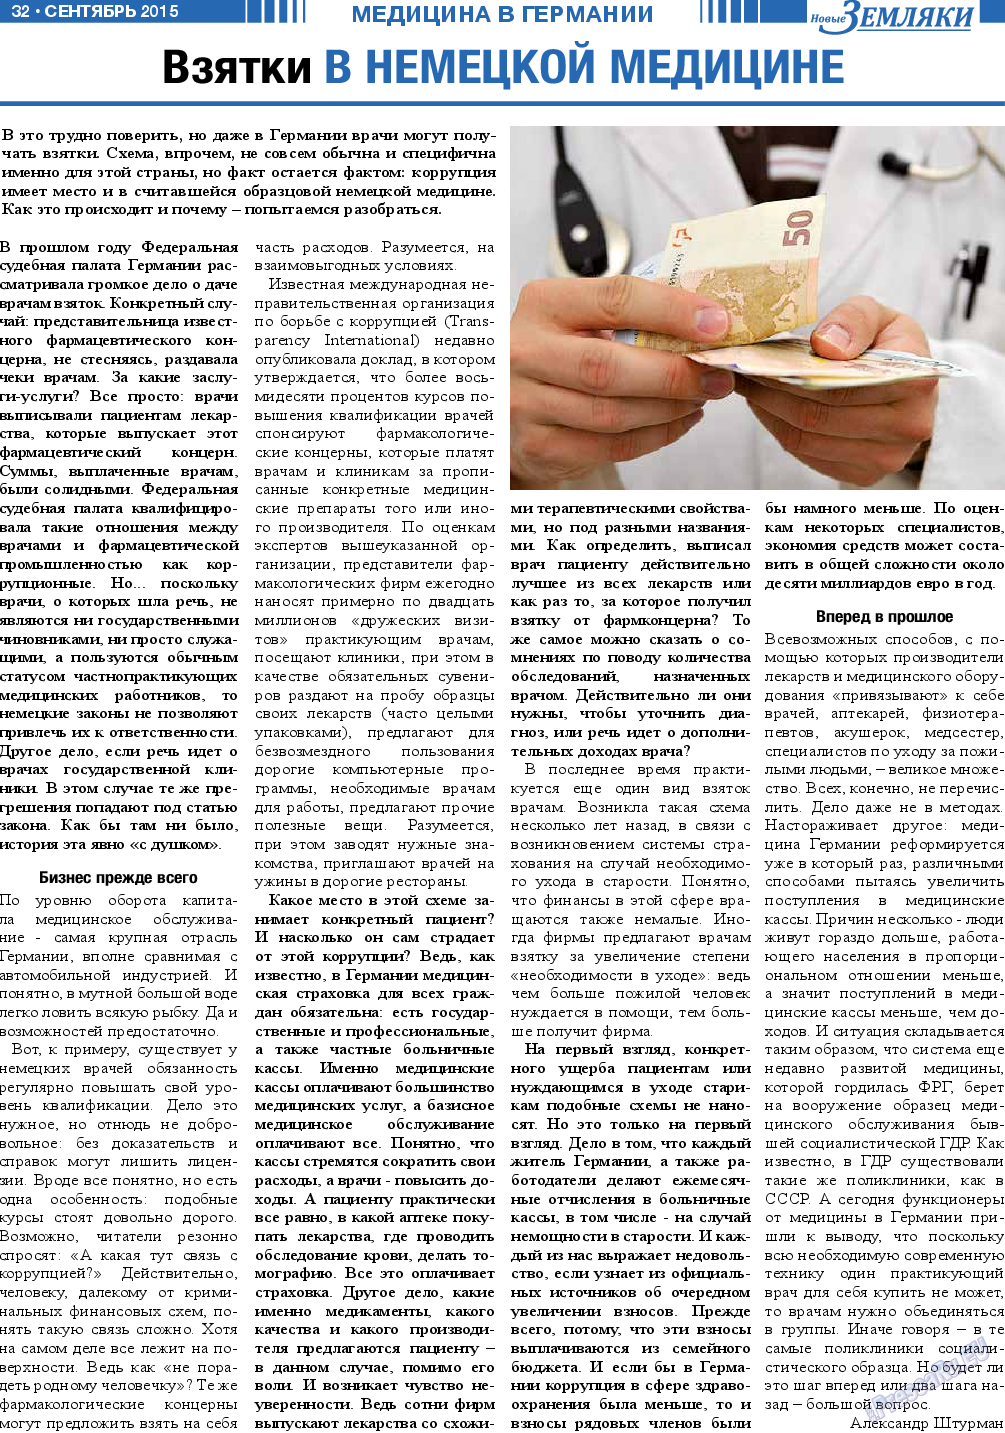 Новые Земляки (газета). 2015 год, номер 9, стр. 32